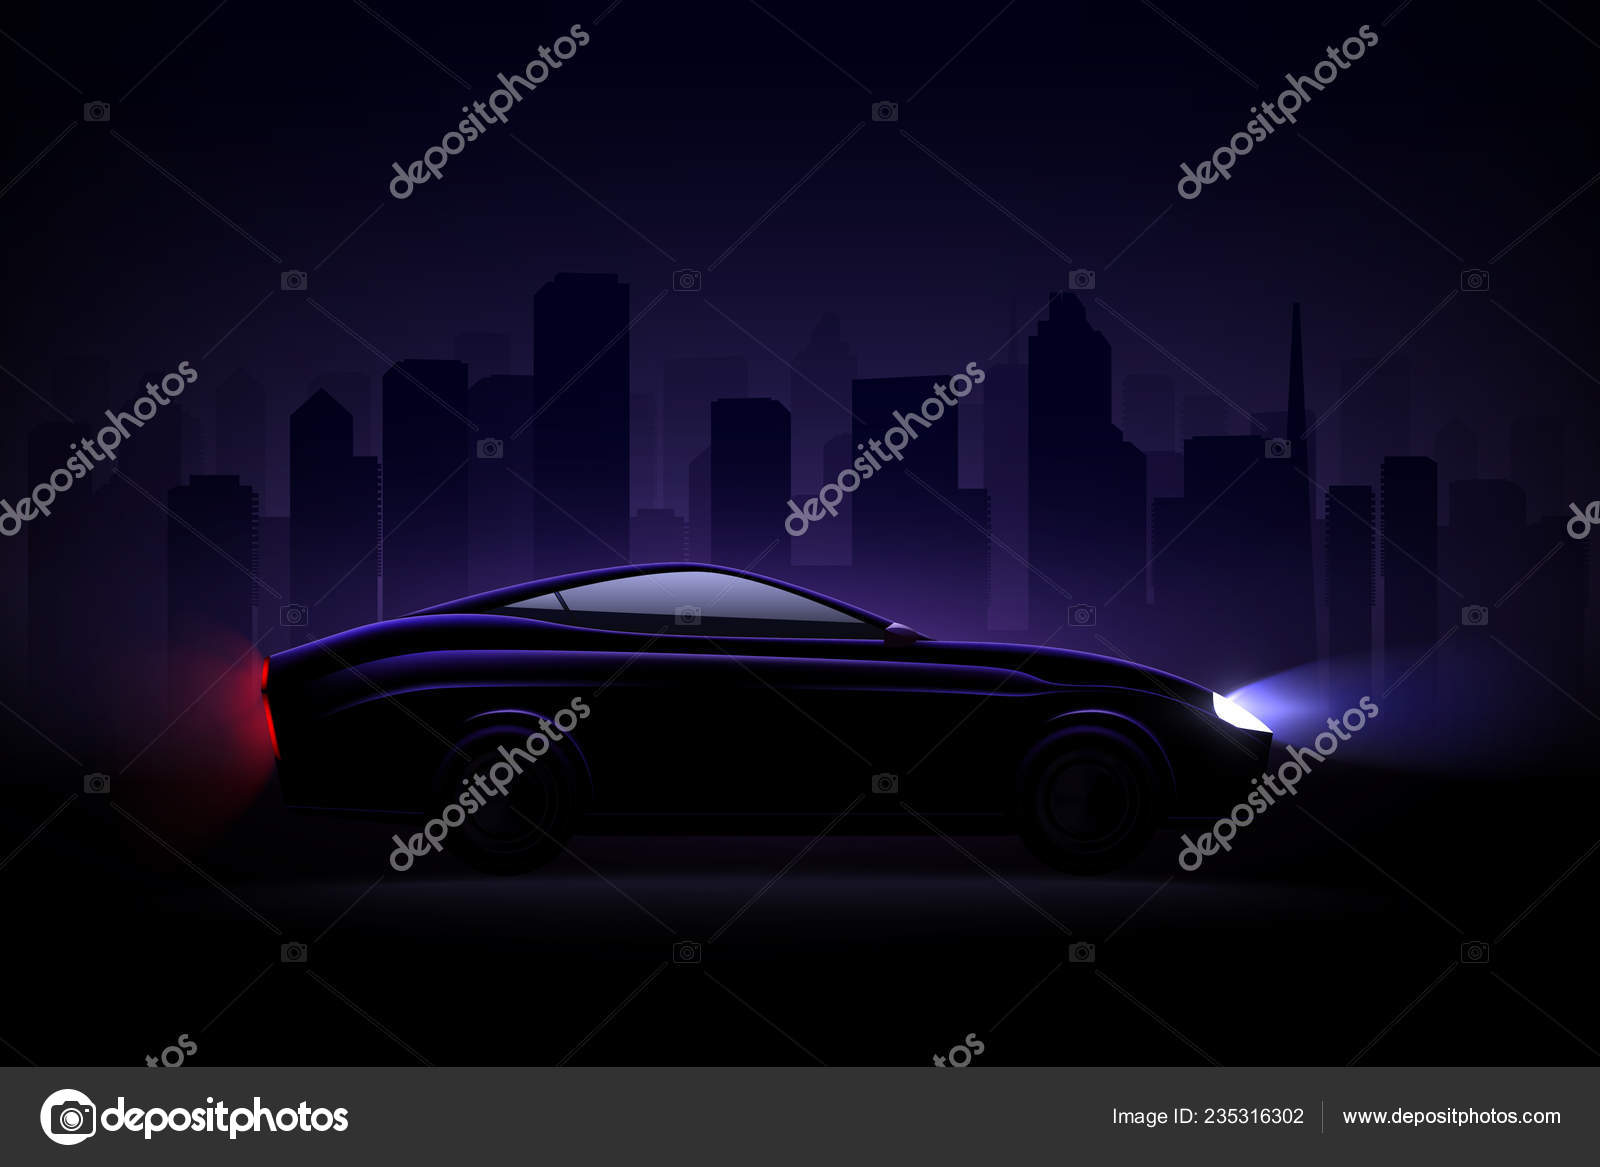 Composición realista de luces led de coche con silueta oscura de automóvil  con faros atenuados y sombras ilustración